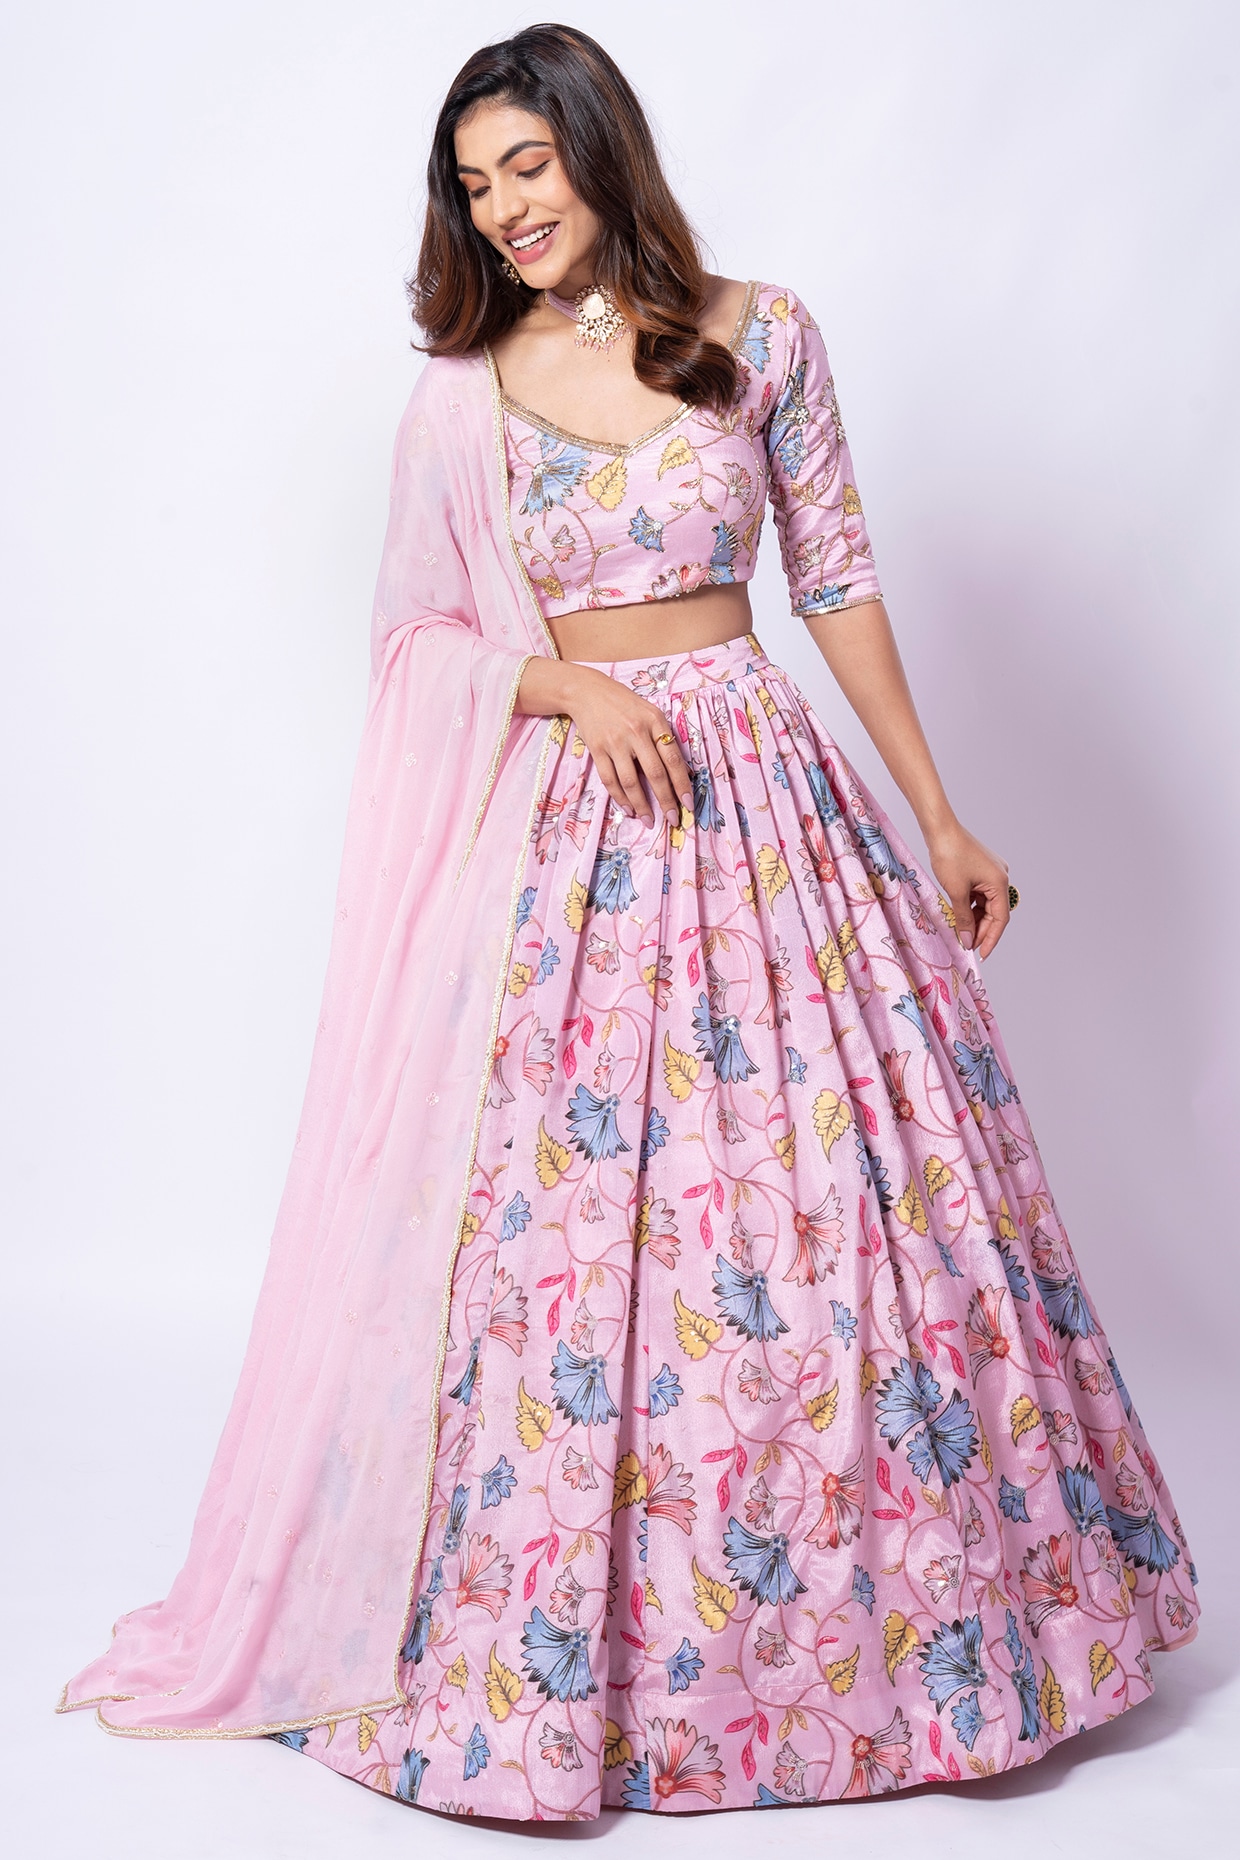 Buy Manish Malhotra Designer Lehenga Choli for Wedding Sangeet Bridal Wear  Outfit Indian Bridesmaids Lehenga Choli Chaniya Choli Wedding Dress Online  in India - Etsy